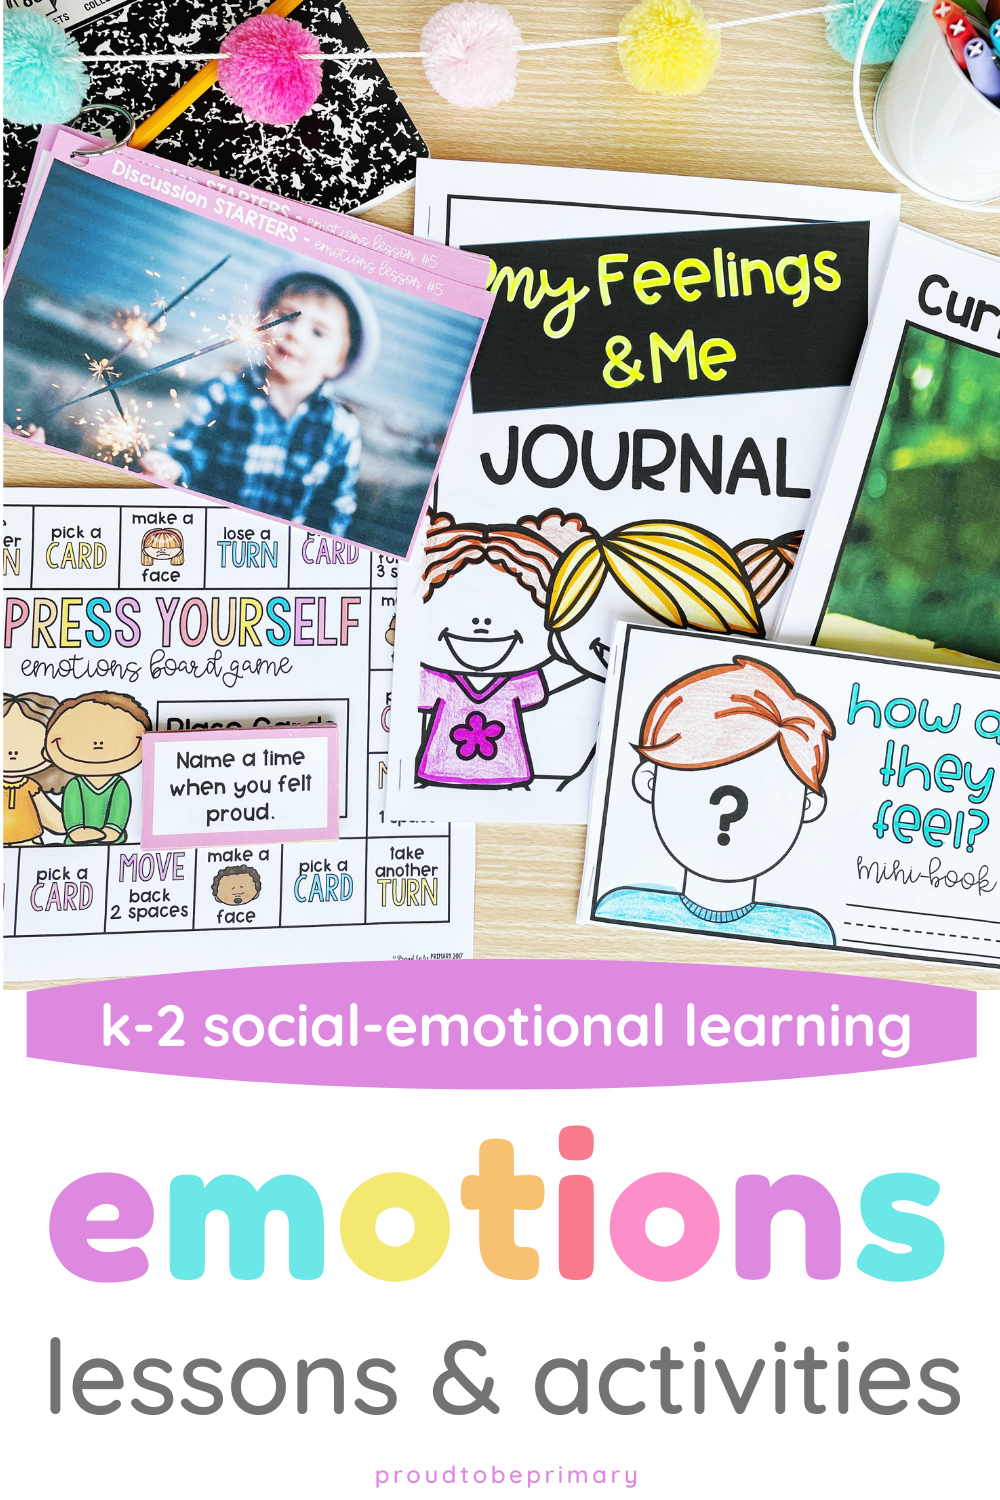 Emotions & Feelings Unit for K-2